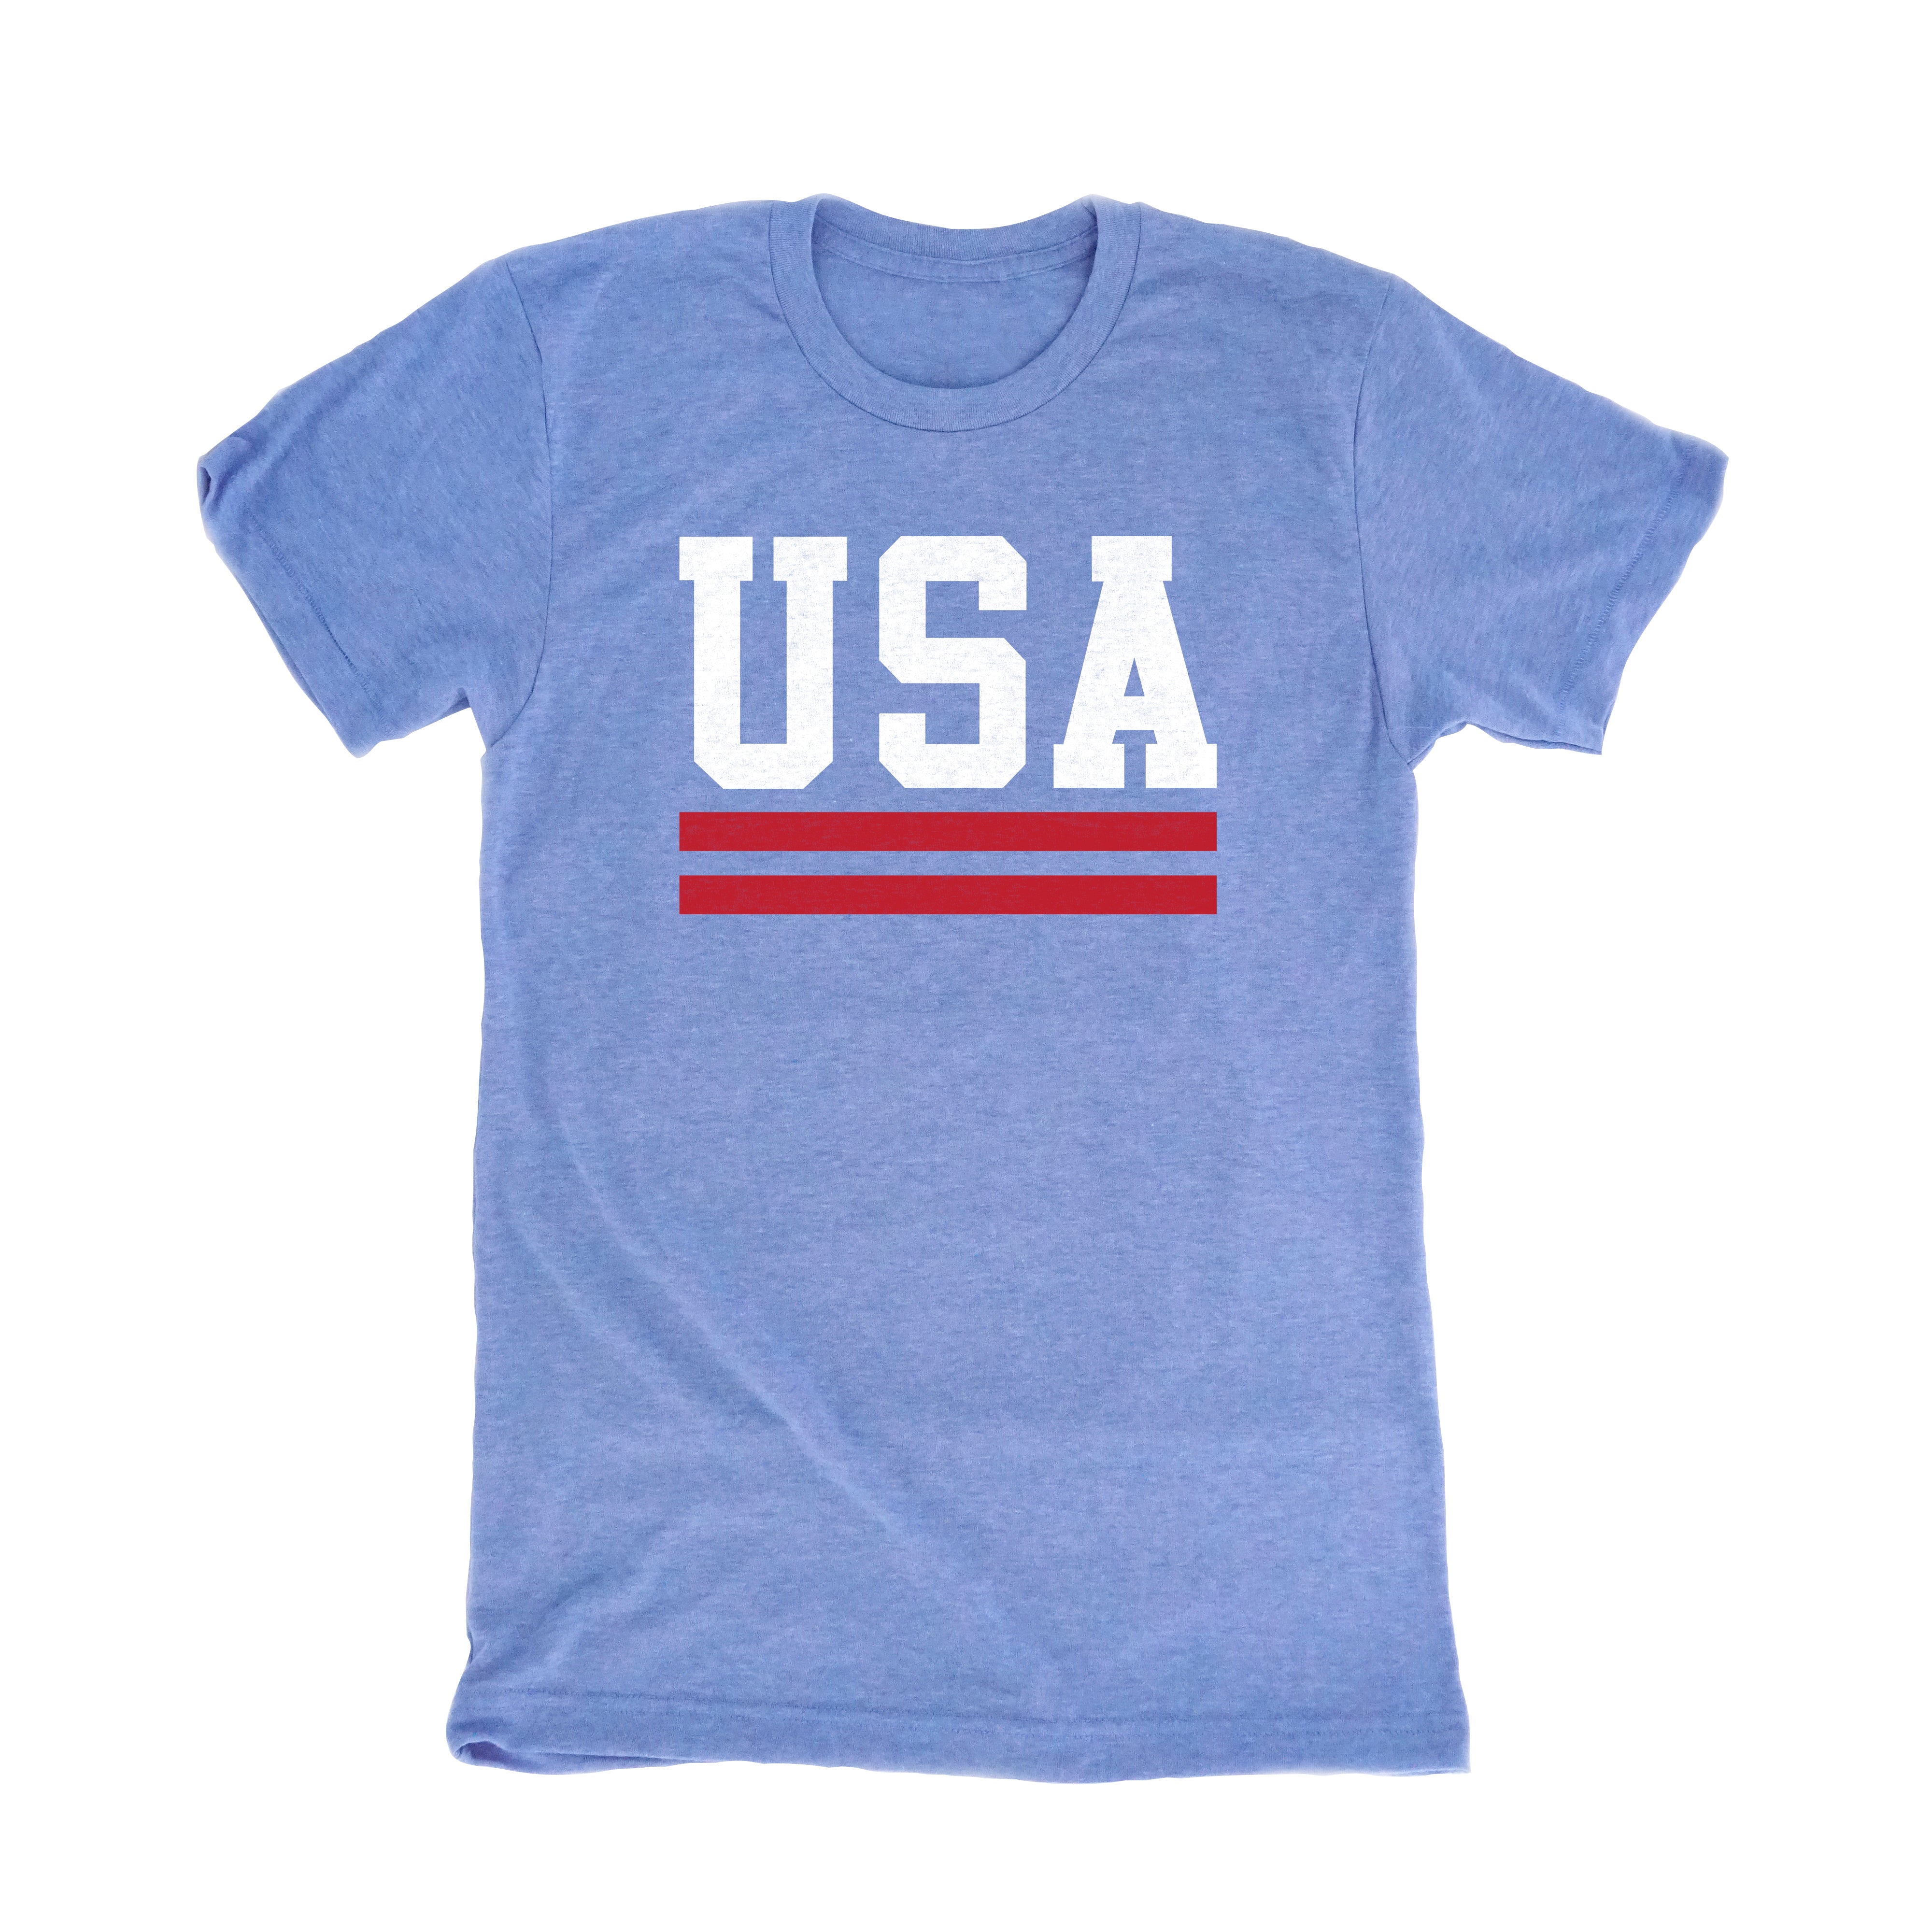 USA Retro Blue T-Shirt